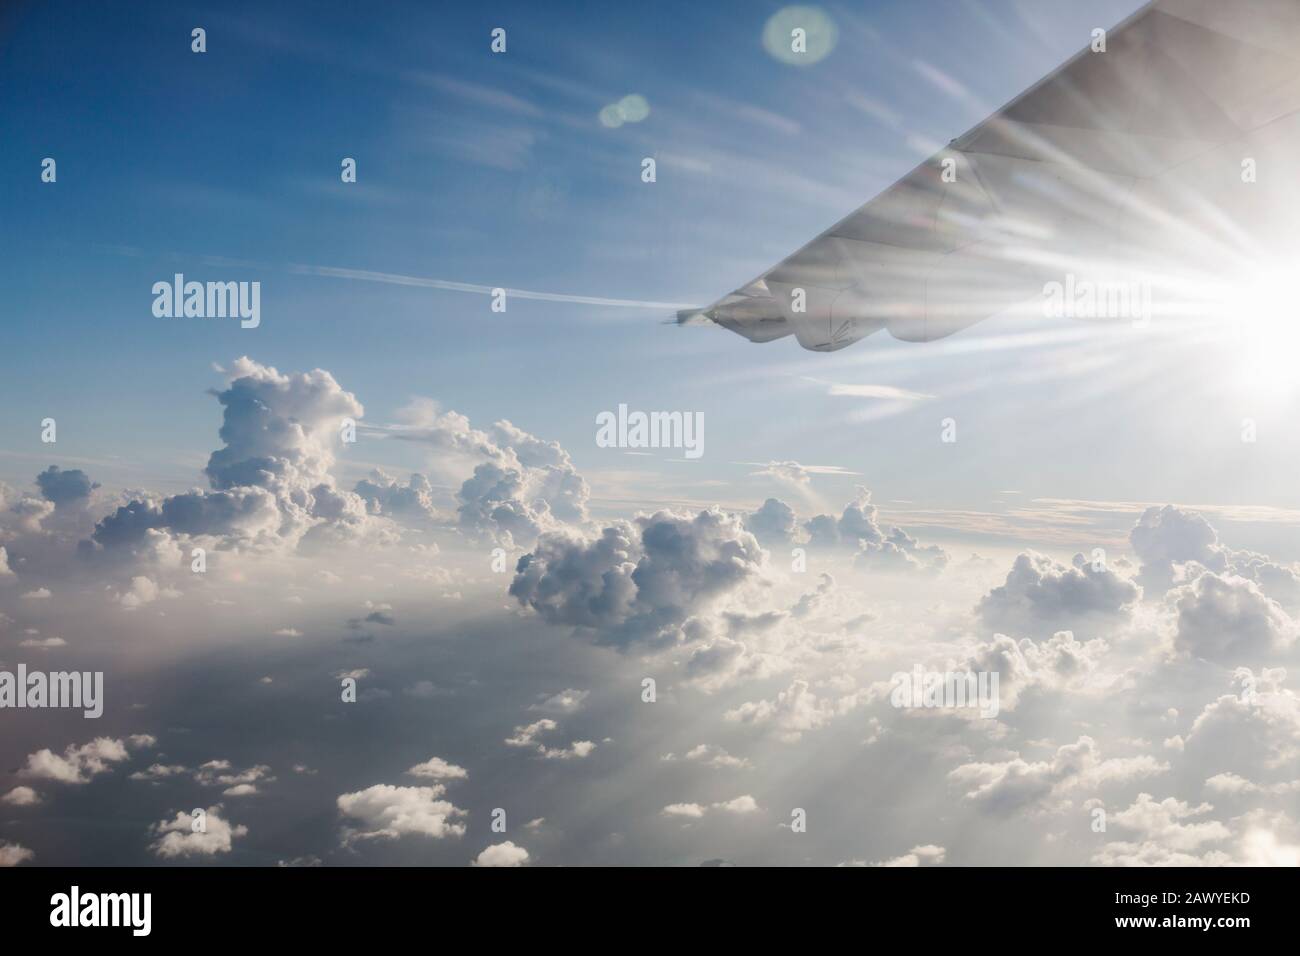 Ala de avión moviéndose a través de un cielo tranquilo, soleado y nublado Foto de stock